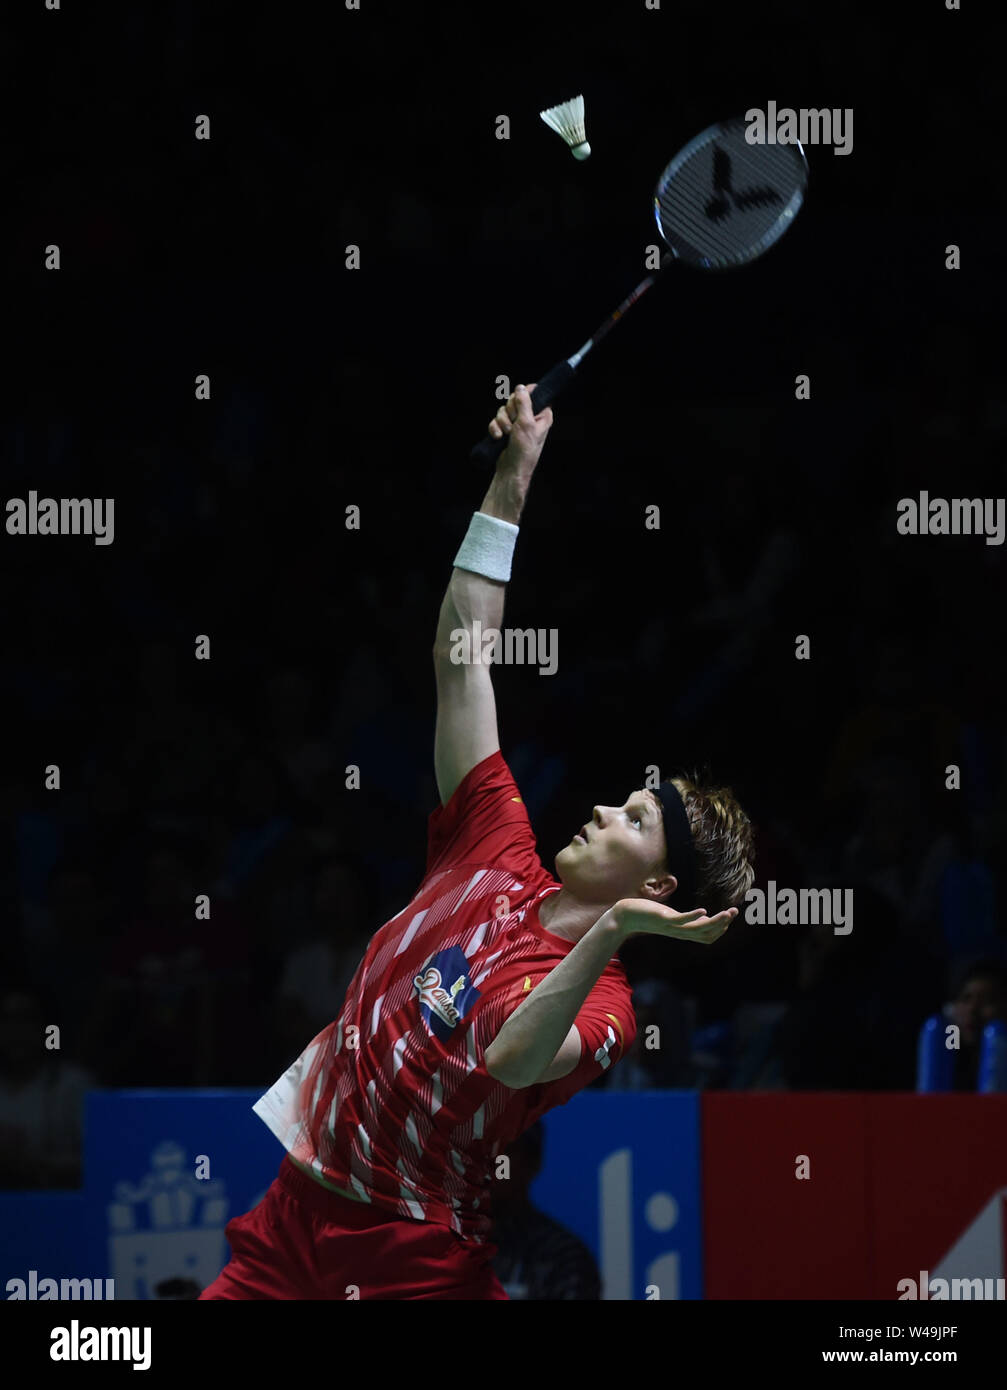 Indonesia vs denmark badminton